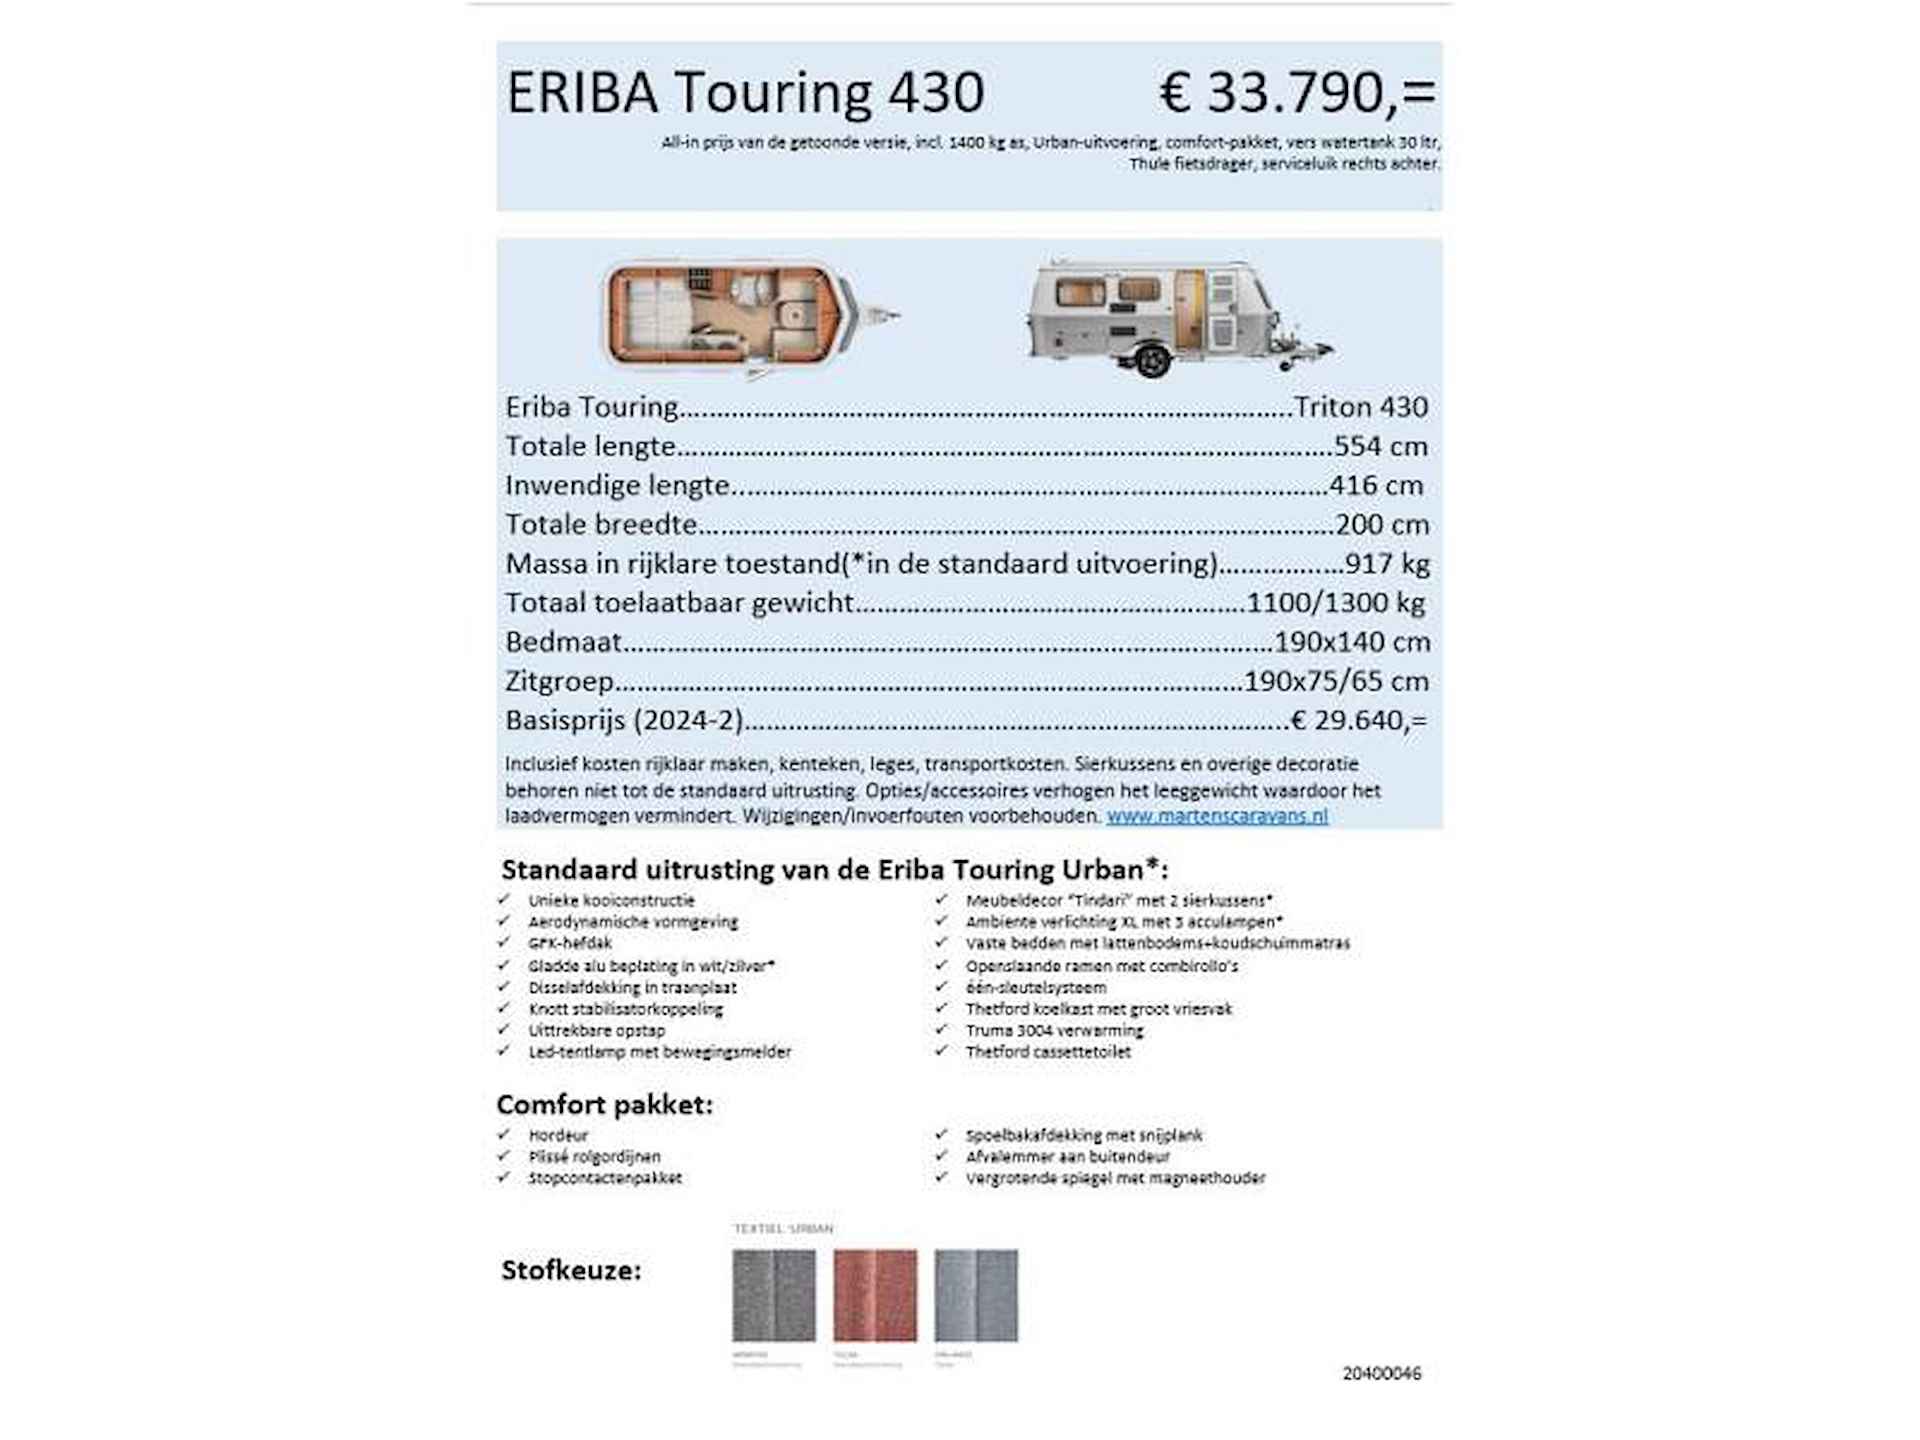 Eriba Touring 430 wordt verwacht: zomer 24 - 6/9